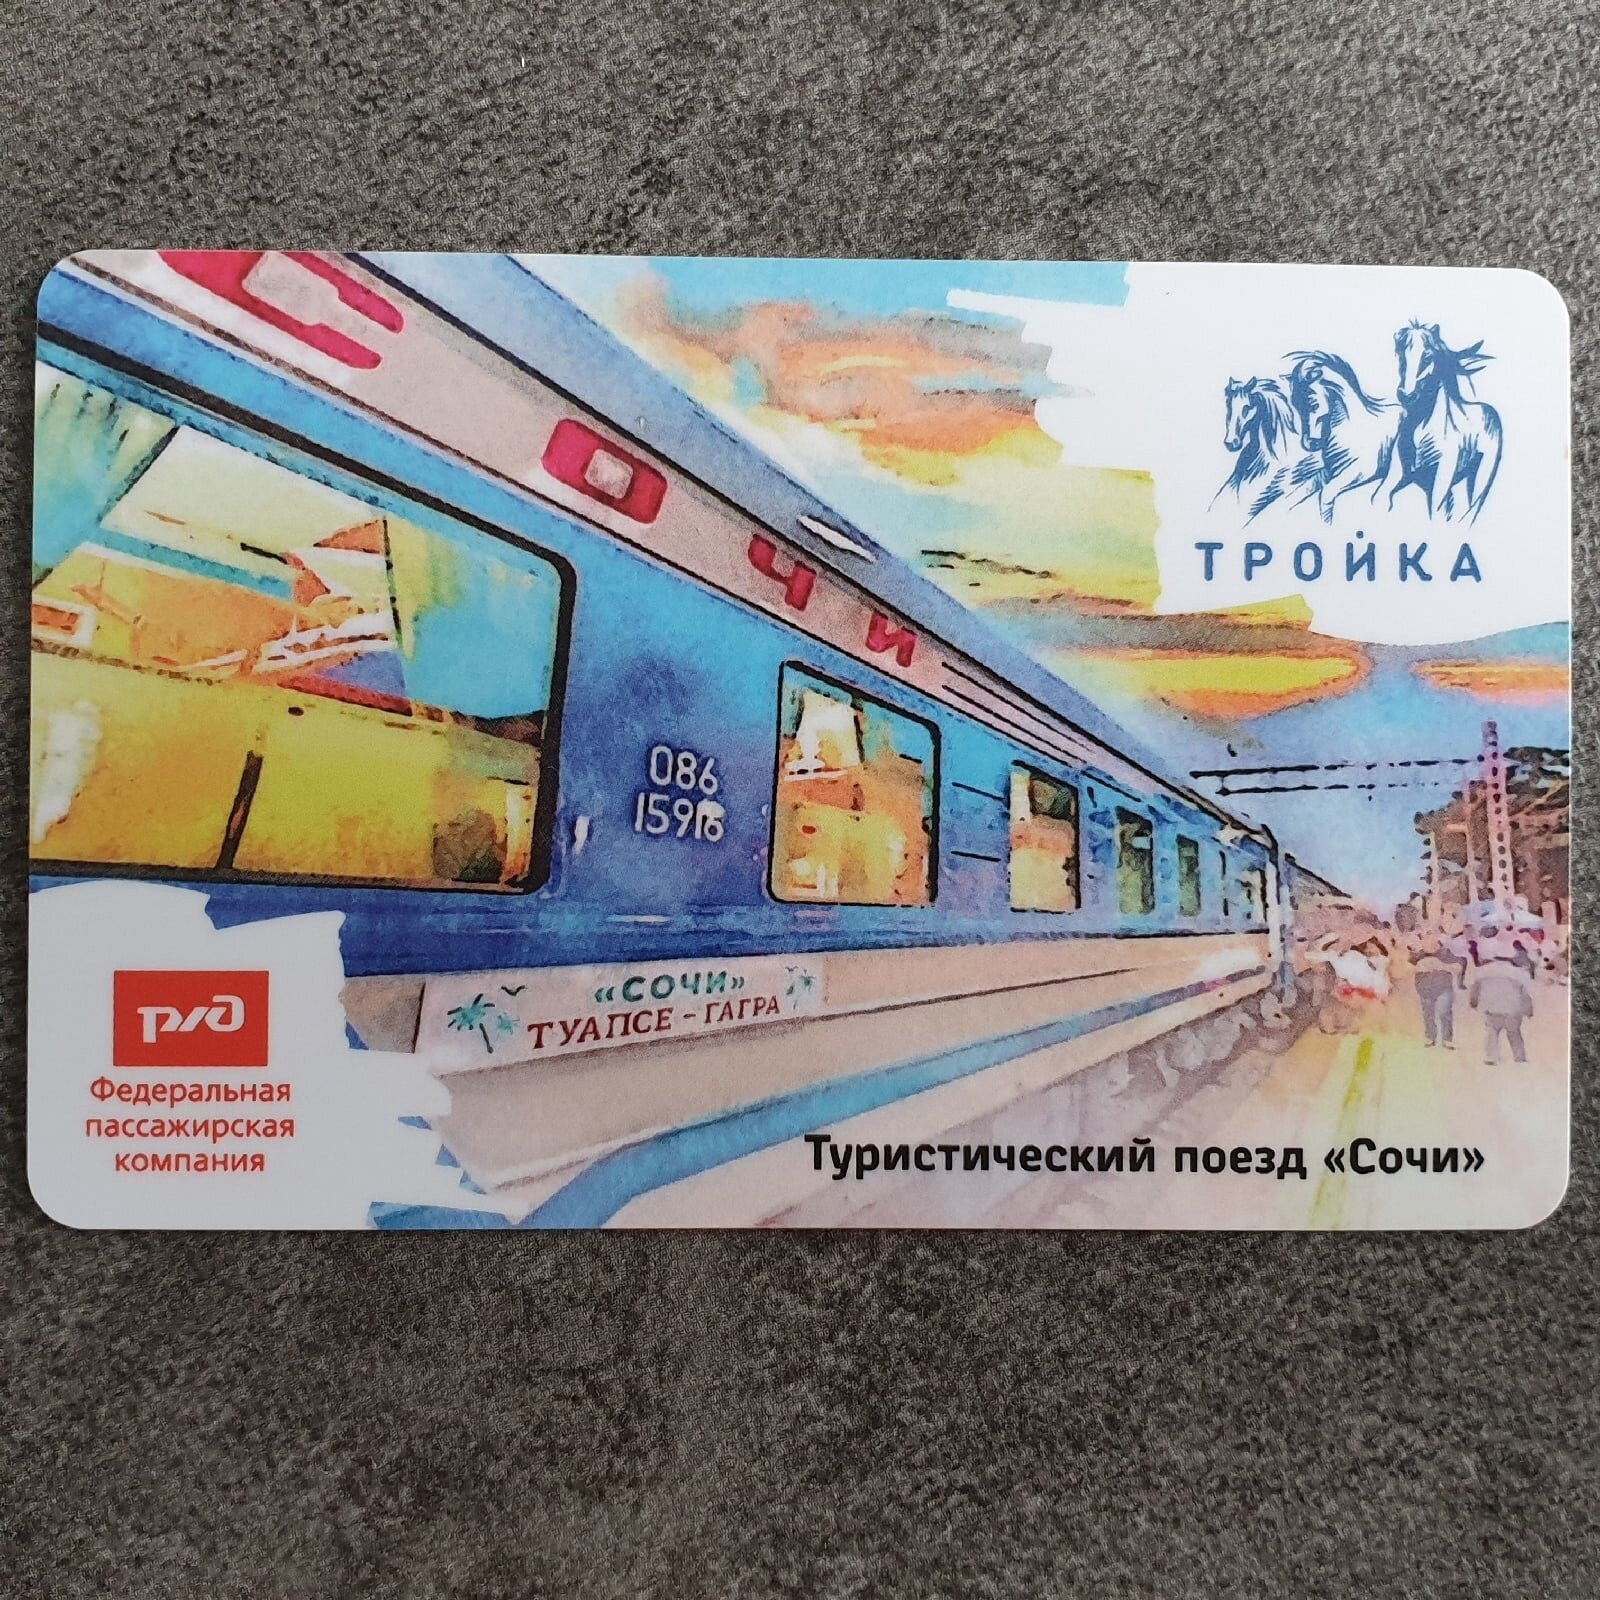 Транспортная карта метро Тройка - поезд Сочи туристический РЖД. Со стартовым балансом (50 рублей)